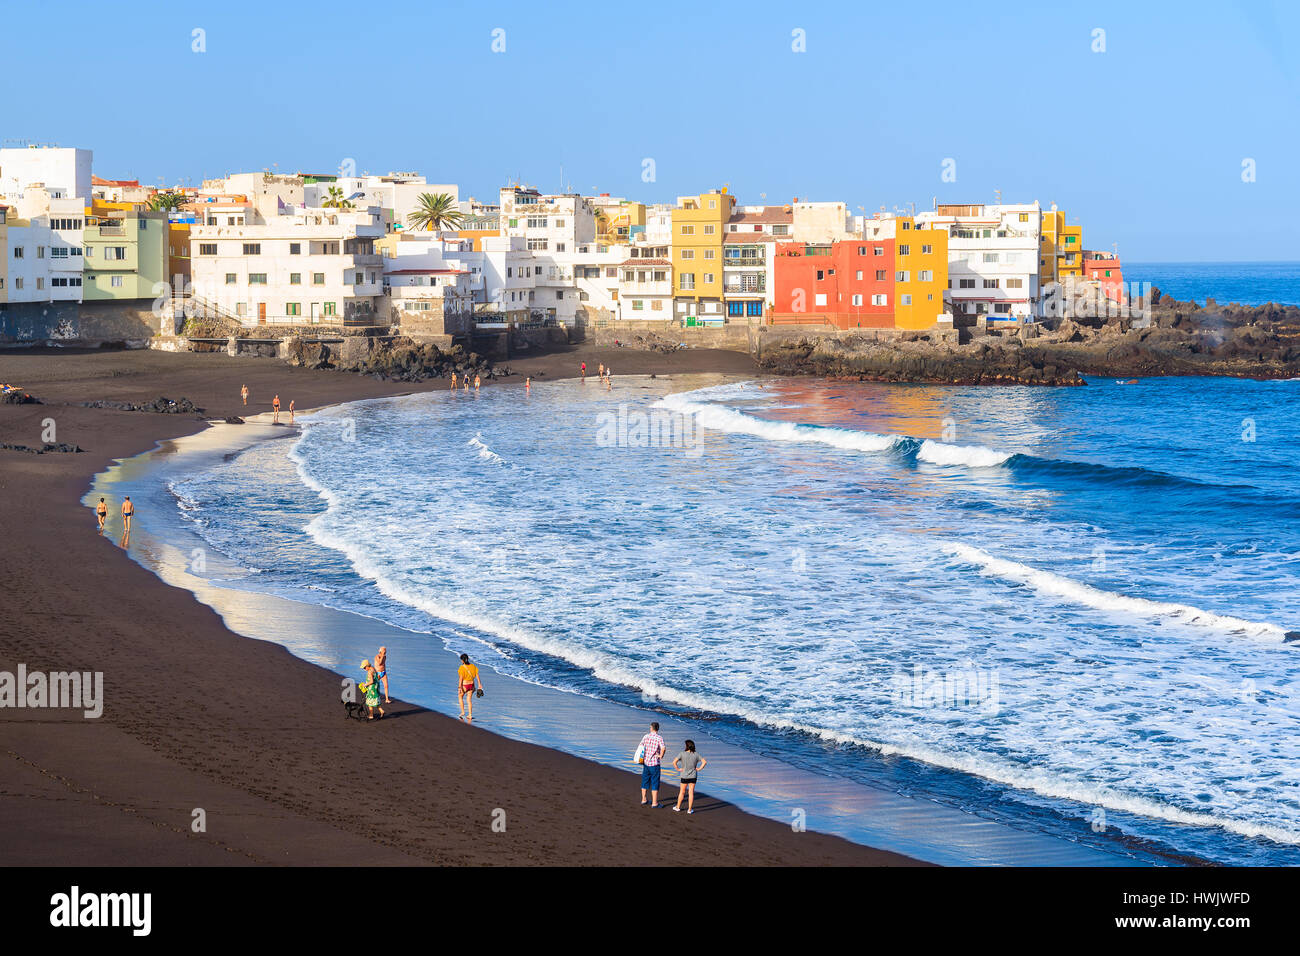 Vue sur la plage et maisons colorées à Puerto de la Cruz, Tenerife island ville, Espagne Banque D'Images